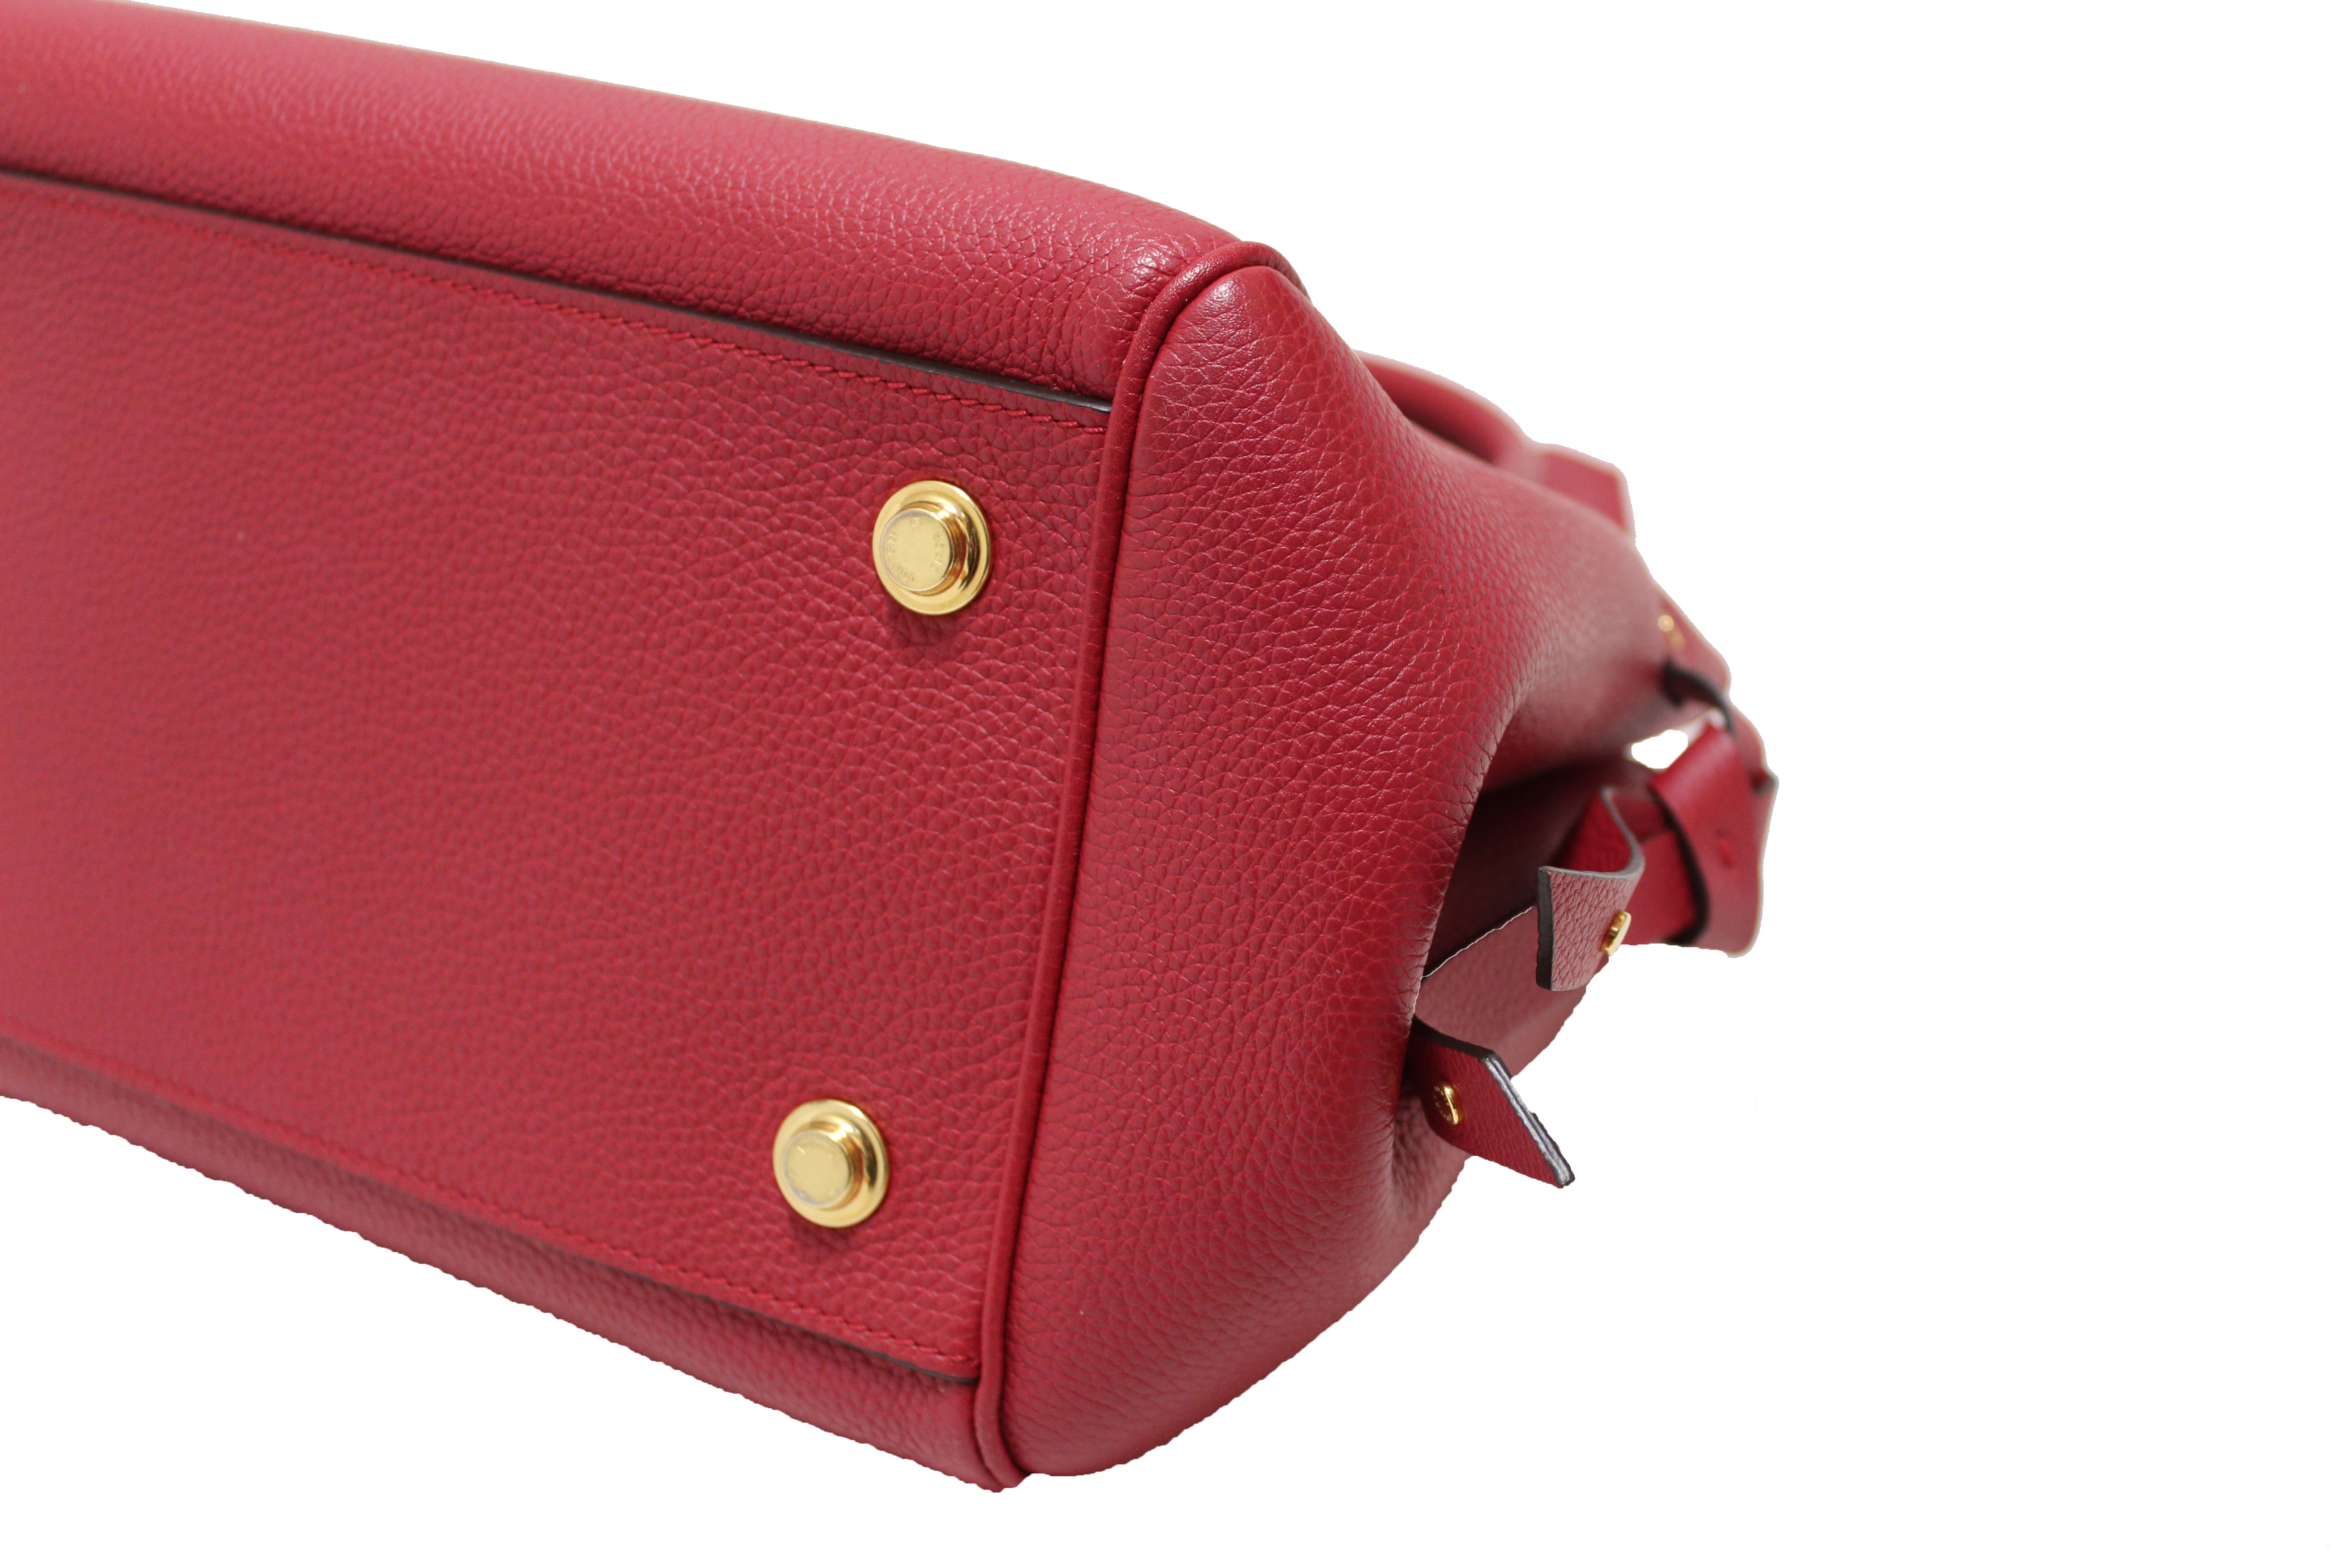 Authentic Louis Vuitton Carmine Red Leather Veau Nuage Milla PM Bag